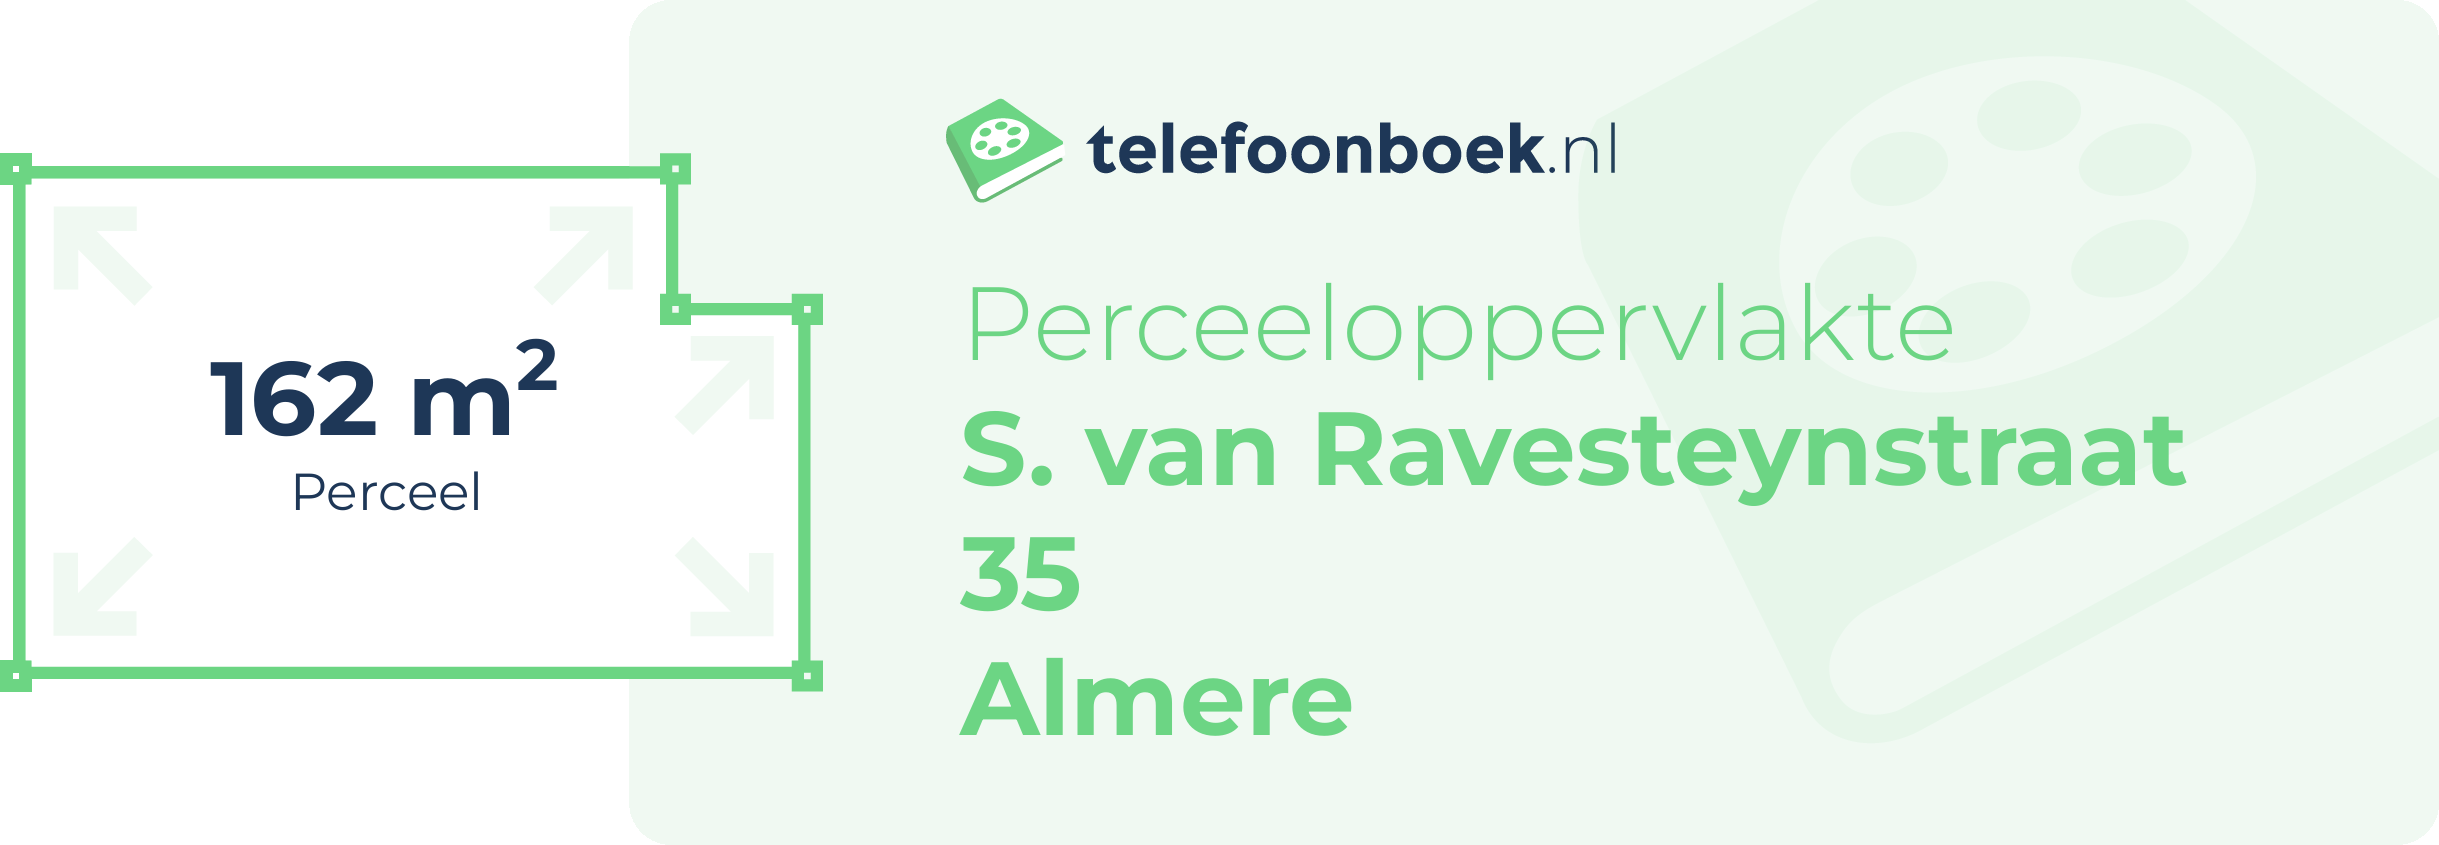 Perceeloppervlakte S. Van Ravesteynstraat 35 Almere